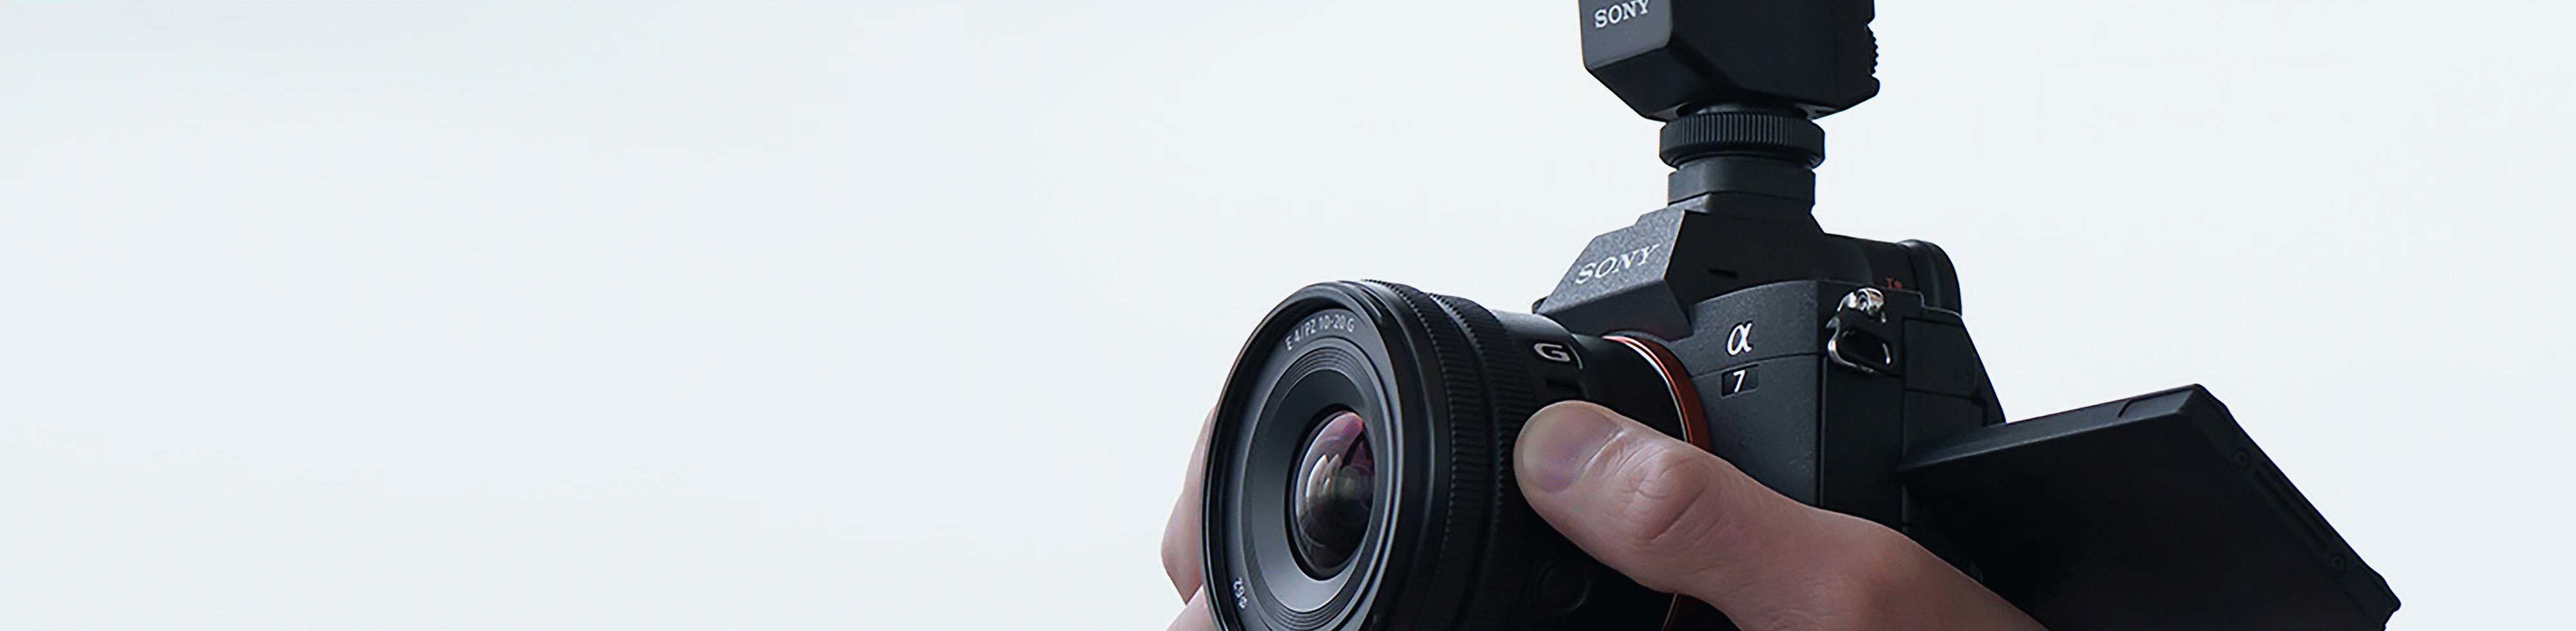 Snímek muže natáčejícího videoklip a ovládajícího páčku zoomu objektivu E PZ 10-20mm F4 G